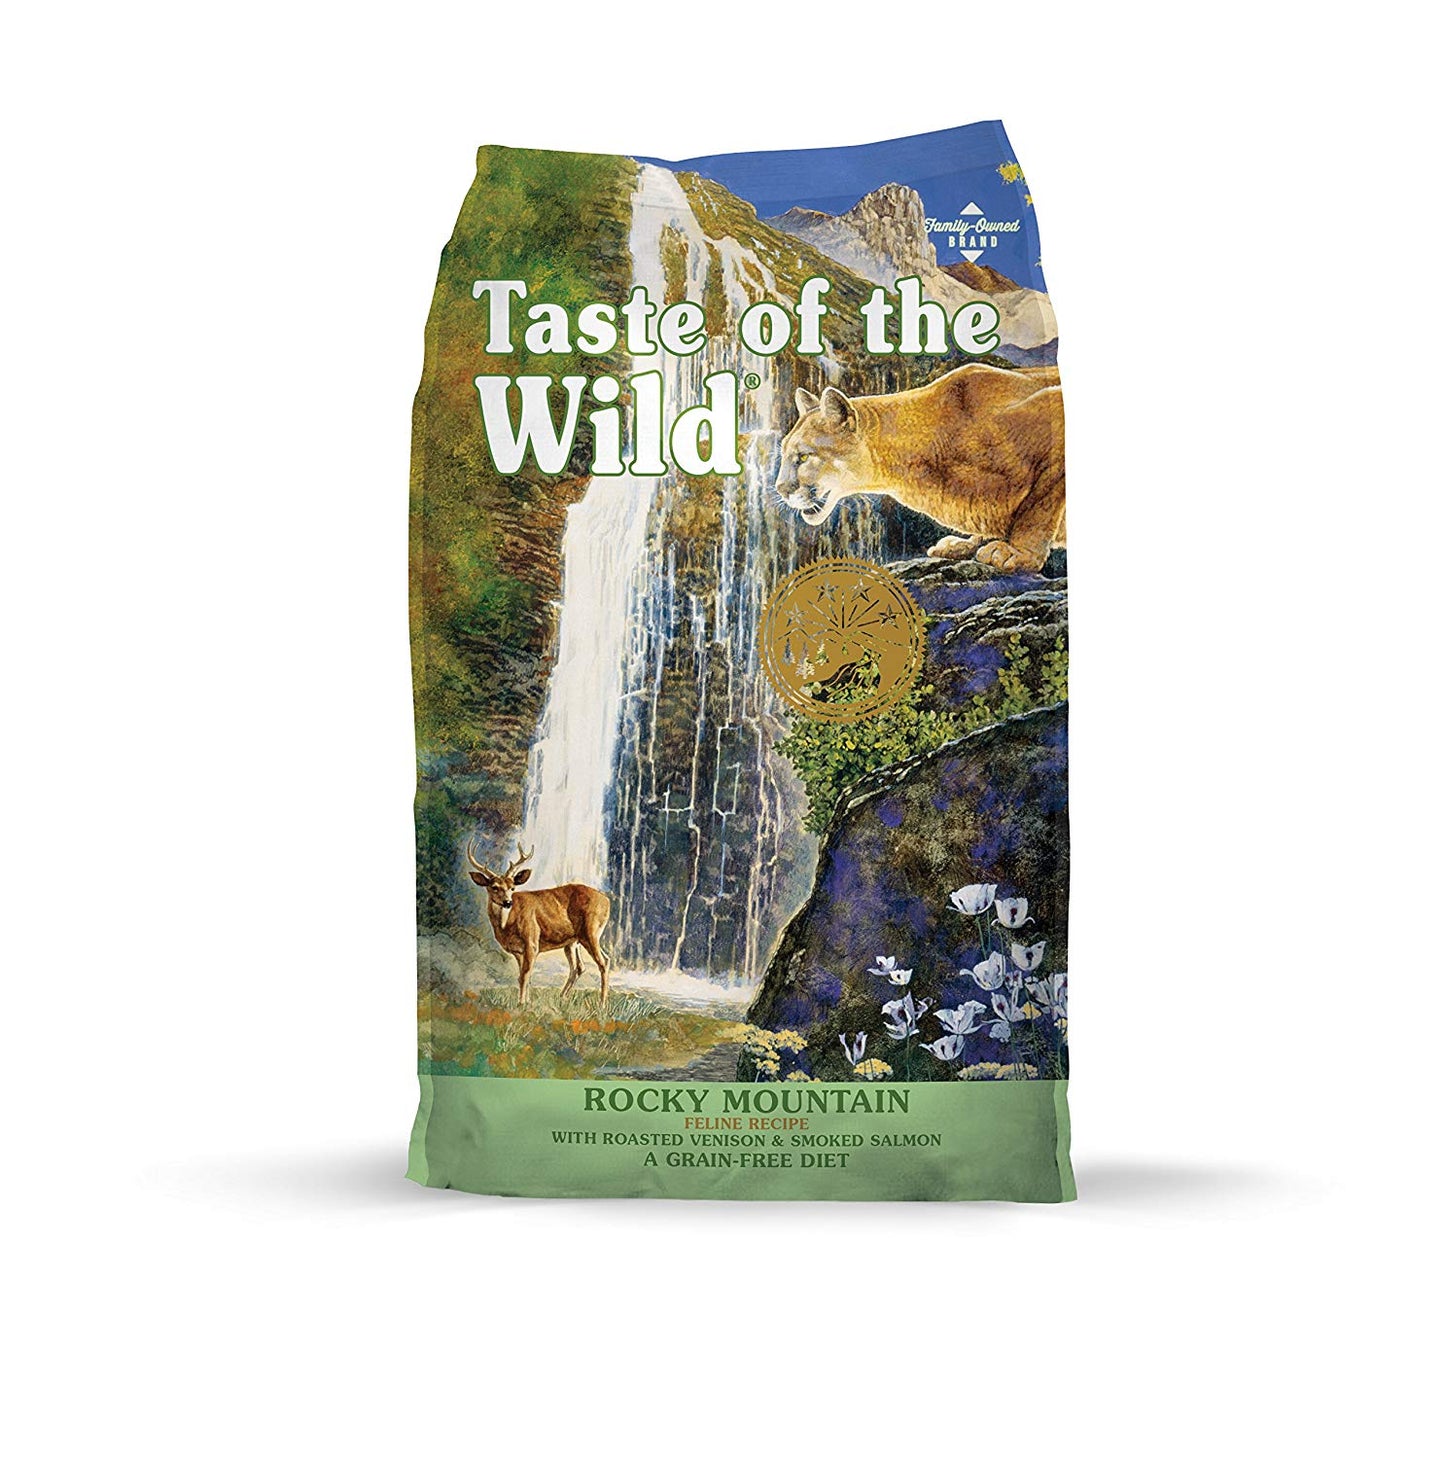 Taste of the Wild rocky mountain